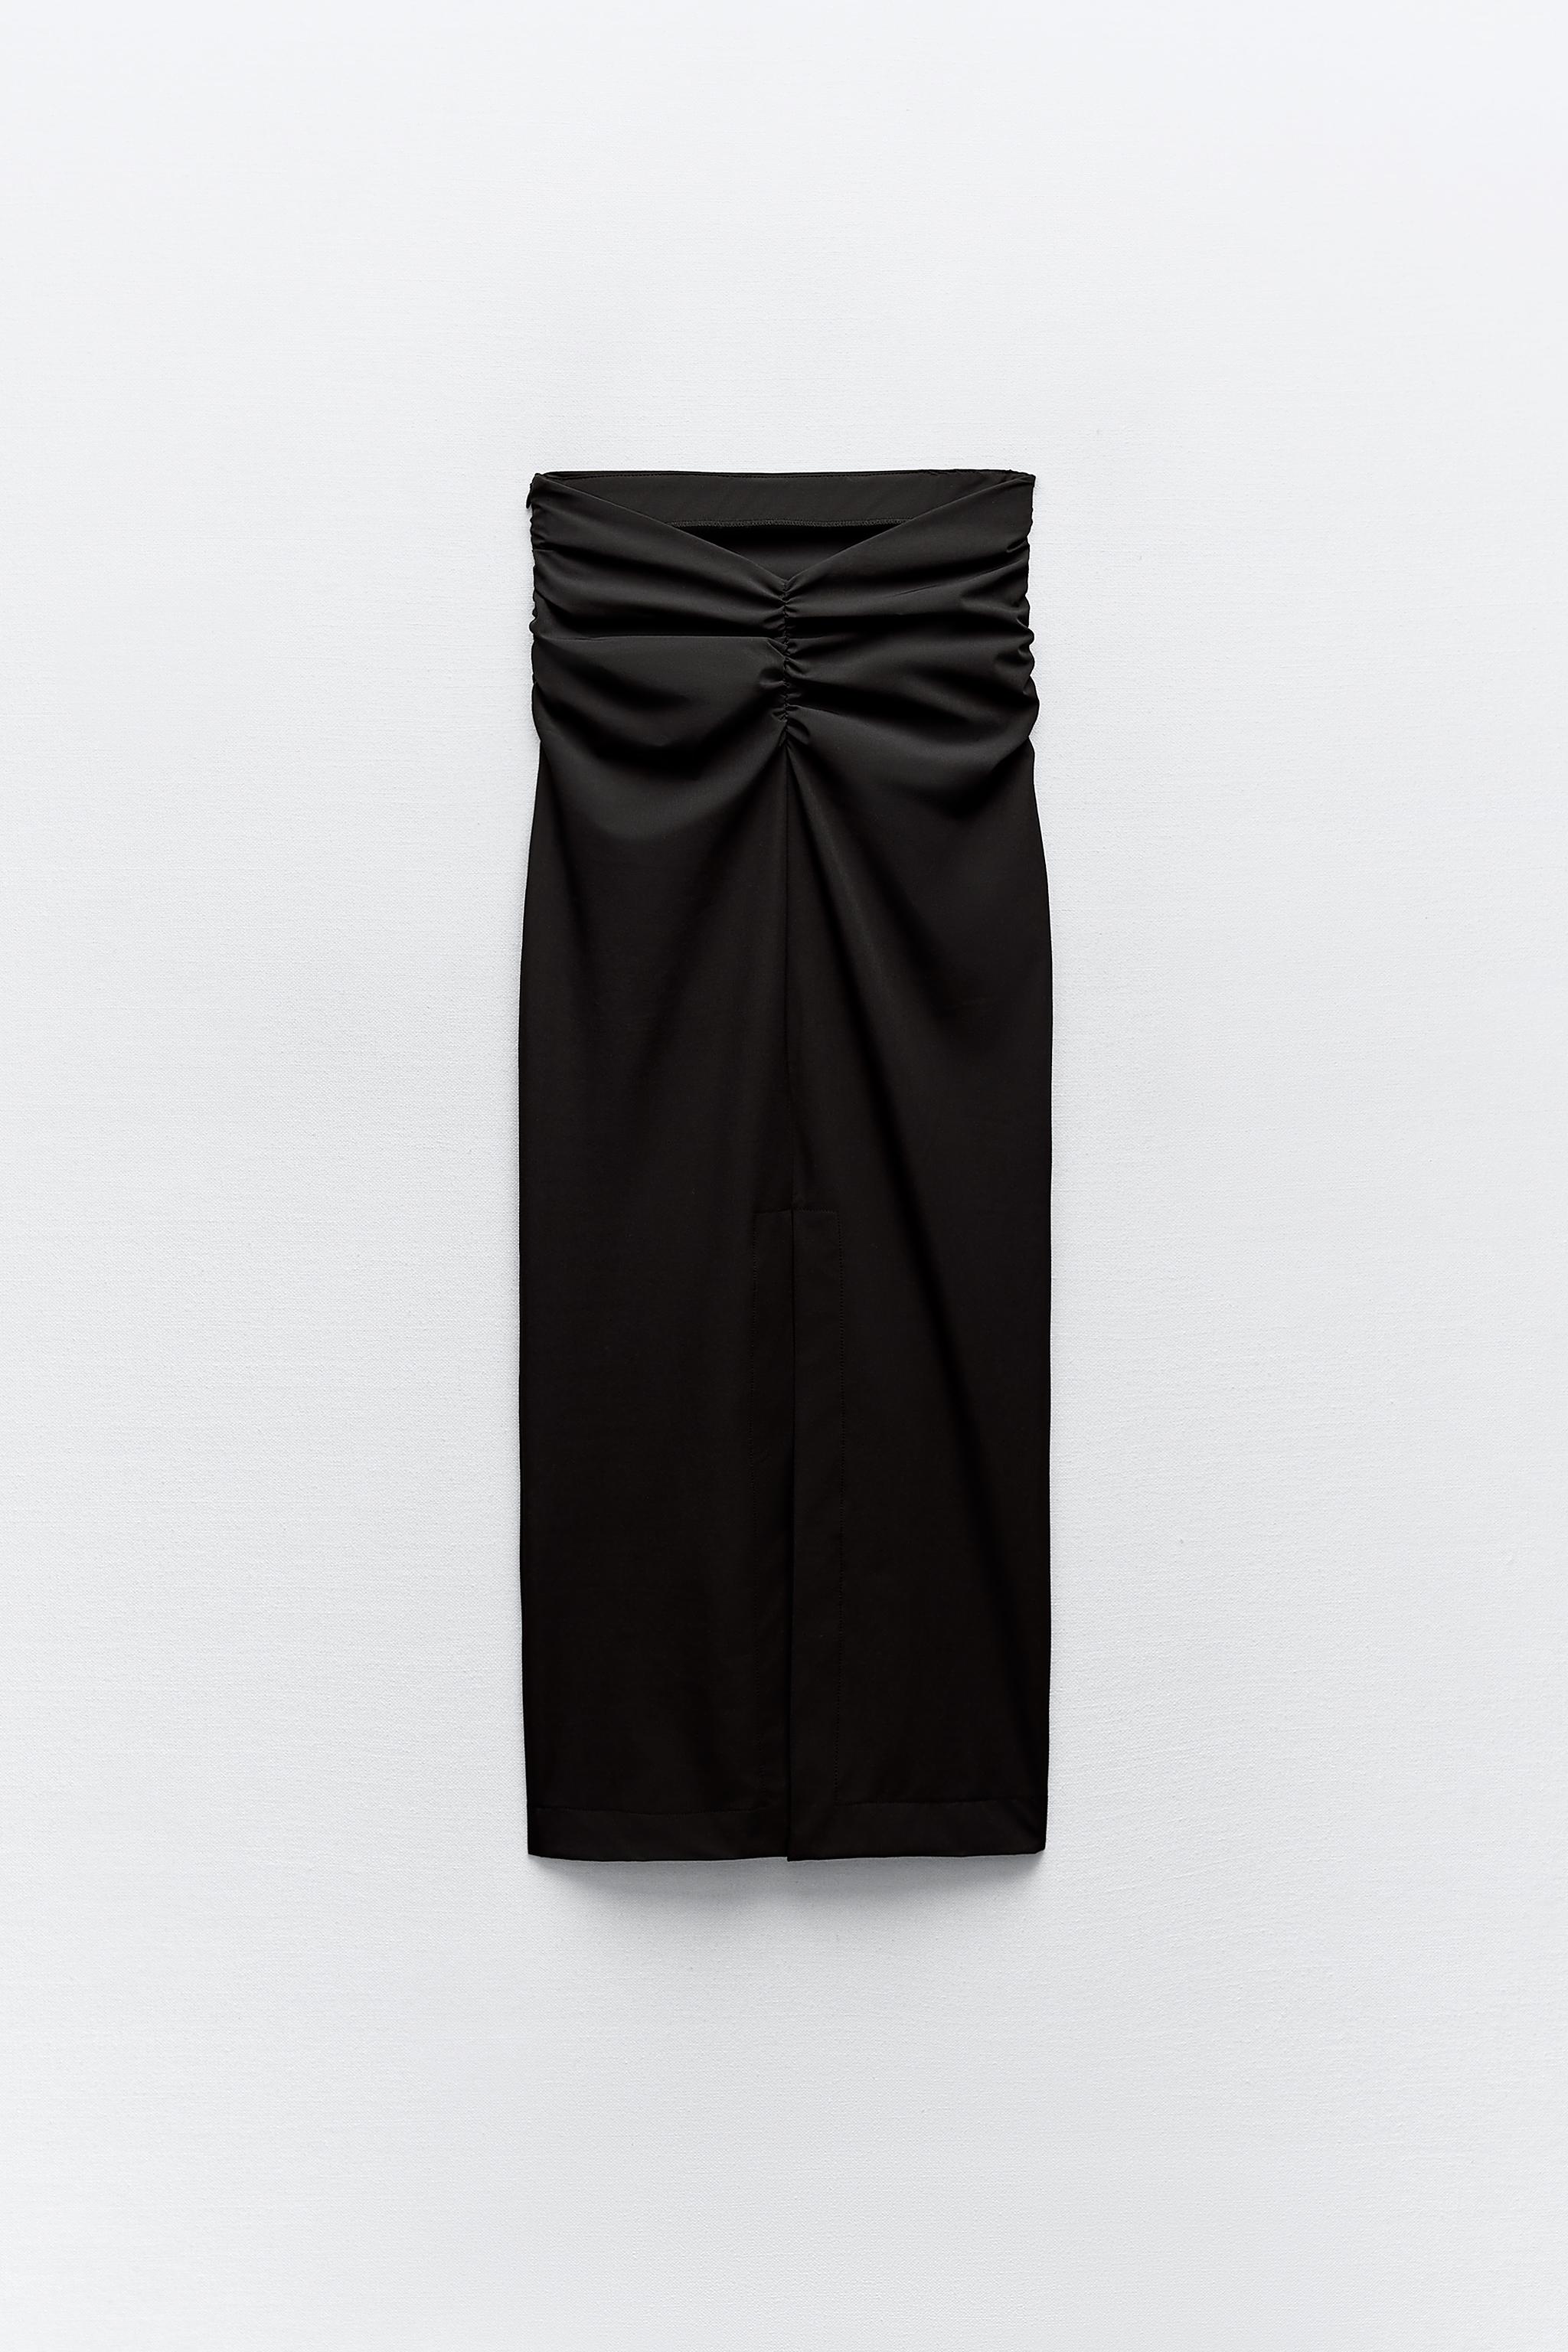 The Black High Waisted Pleated Midi Skirt